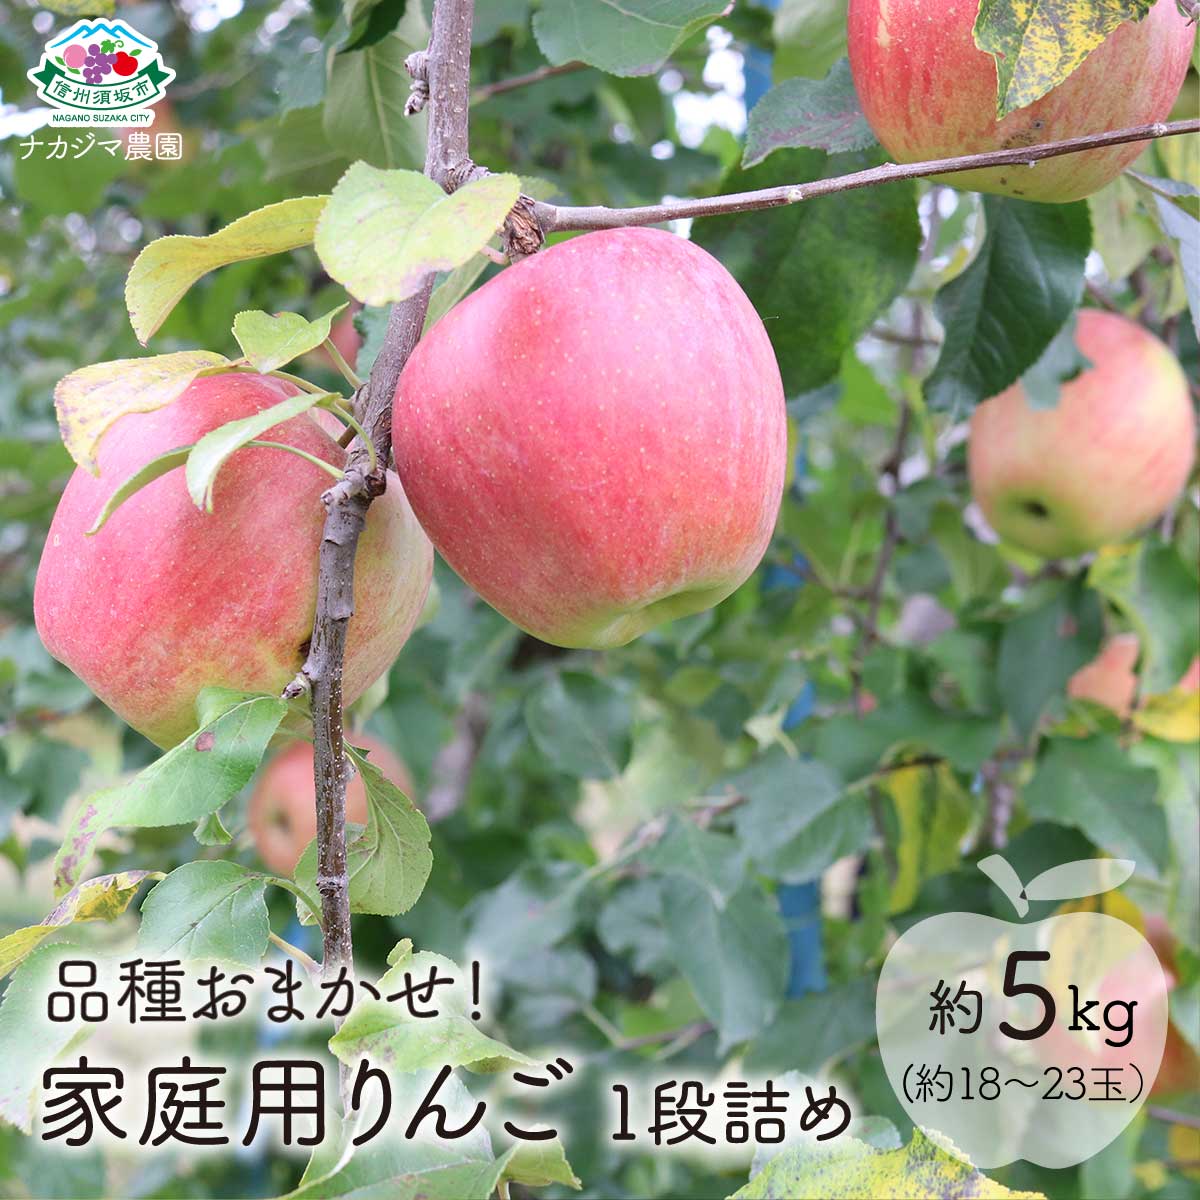 【ふるさと納税】【品種おまかせ】家庭用りんご 1段詰め 約5